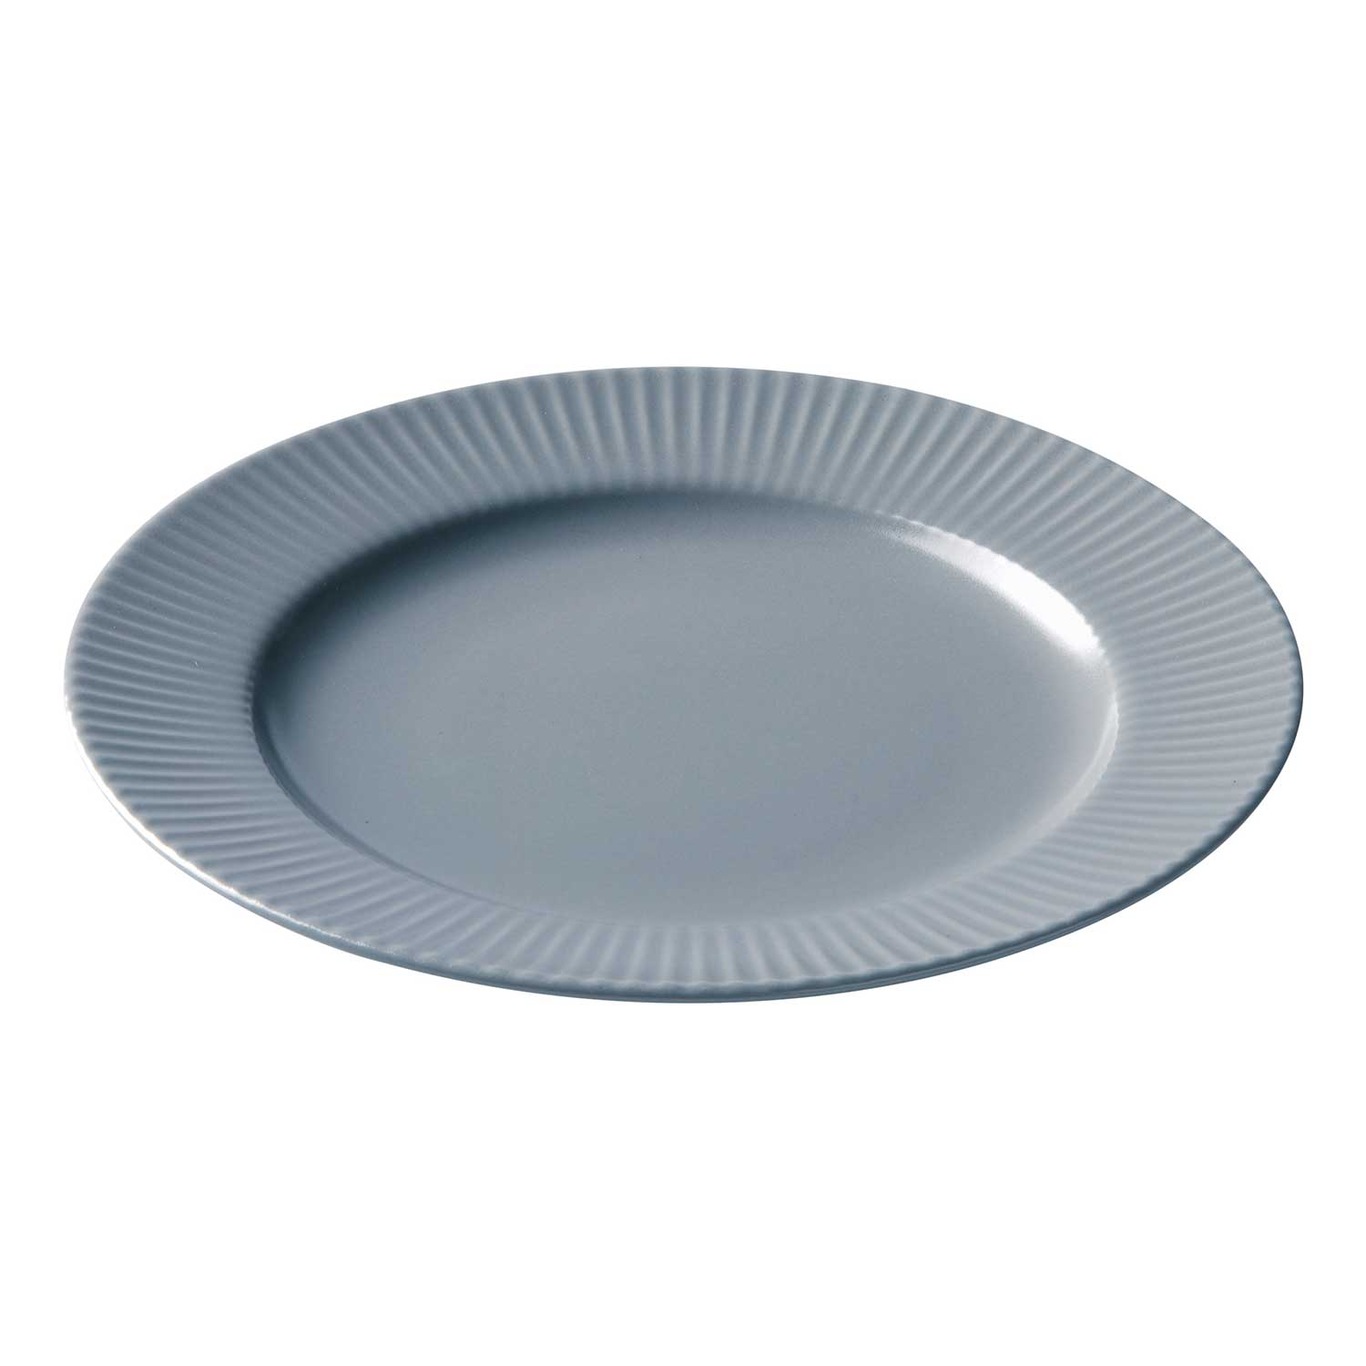 Groovy Breakfast Plate 21 cm, Grey